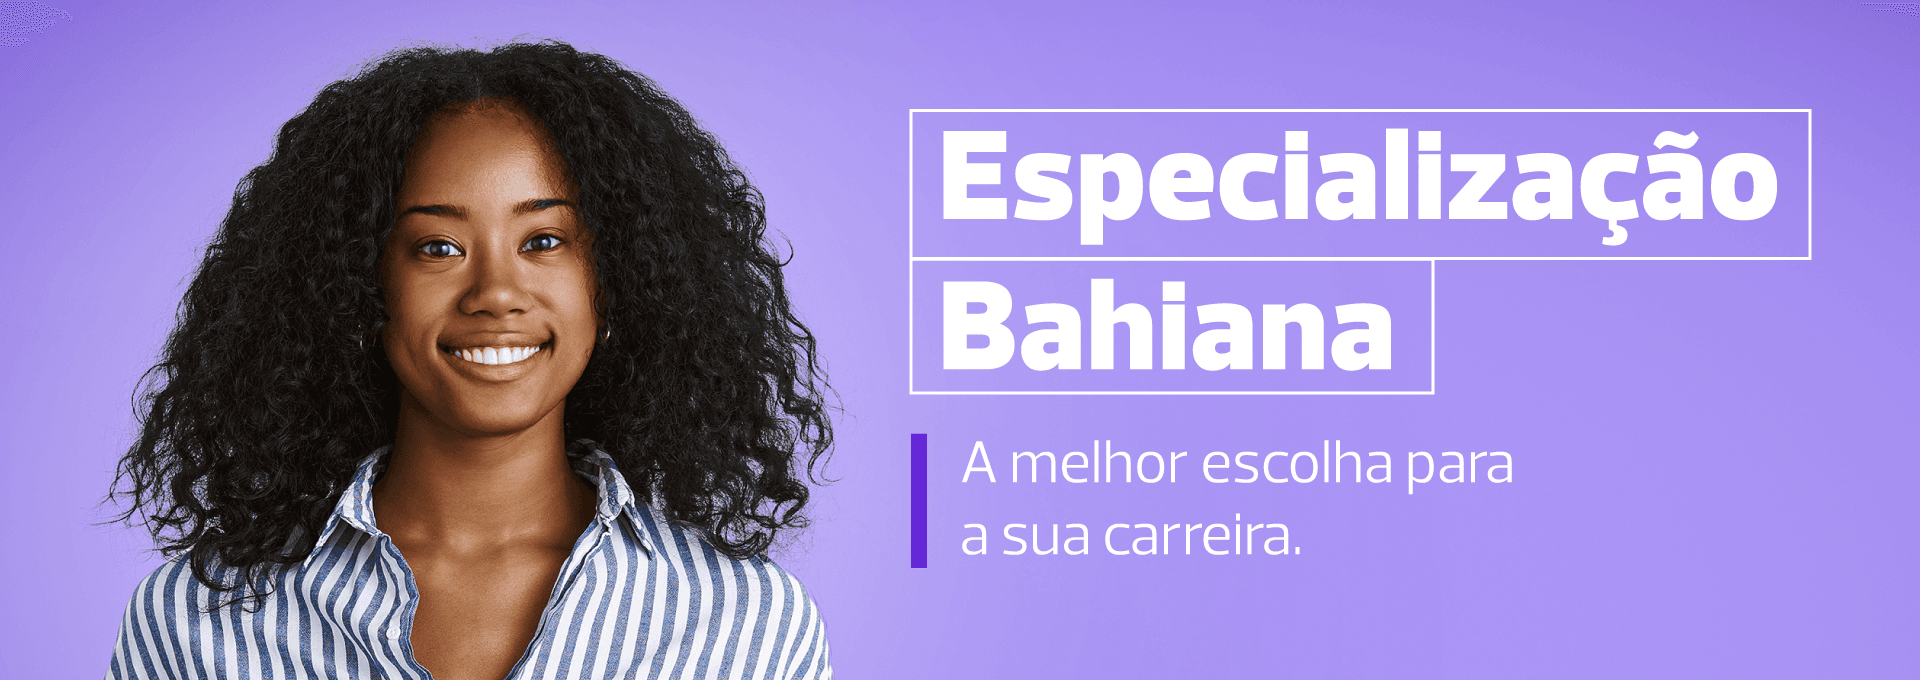 Bahiana Banners Para Site Especializacao 02924